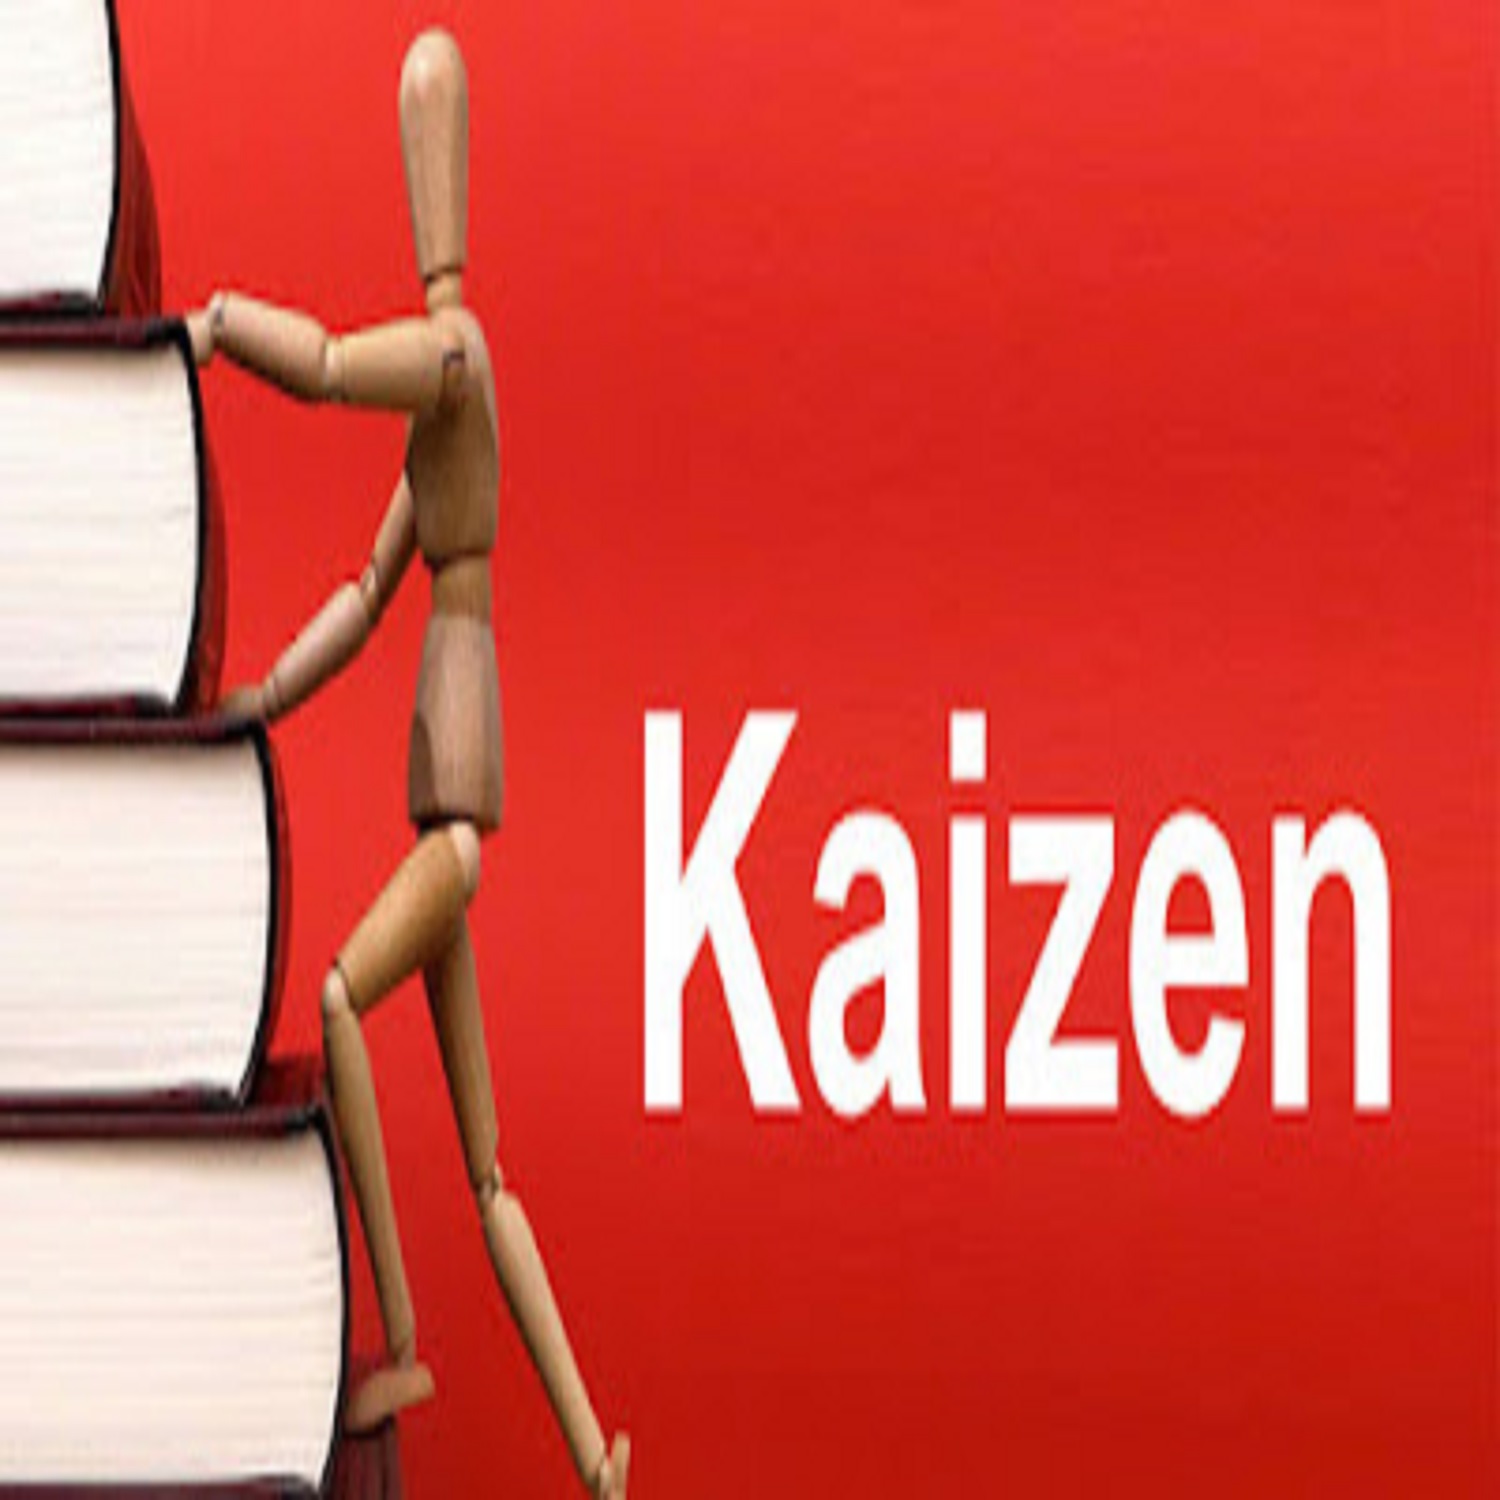 الكايزن Kaizen

